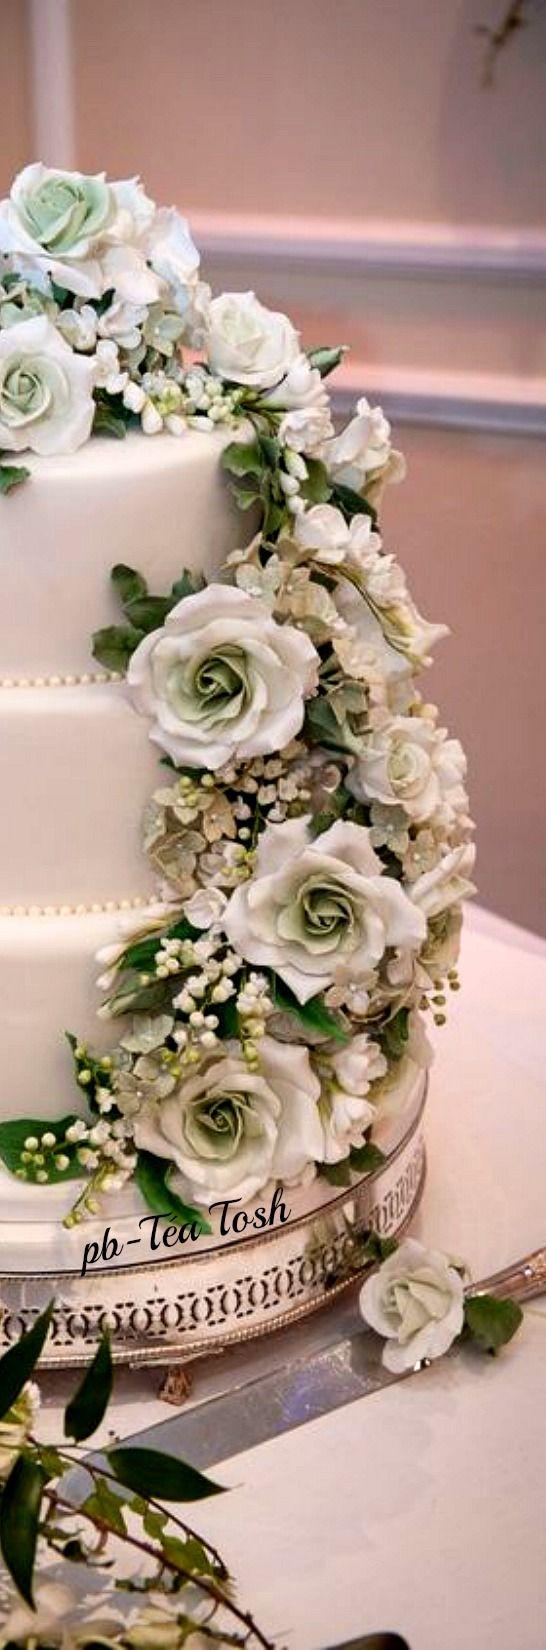 Mariage - Beautiful Floral Wedding Cake